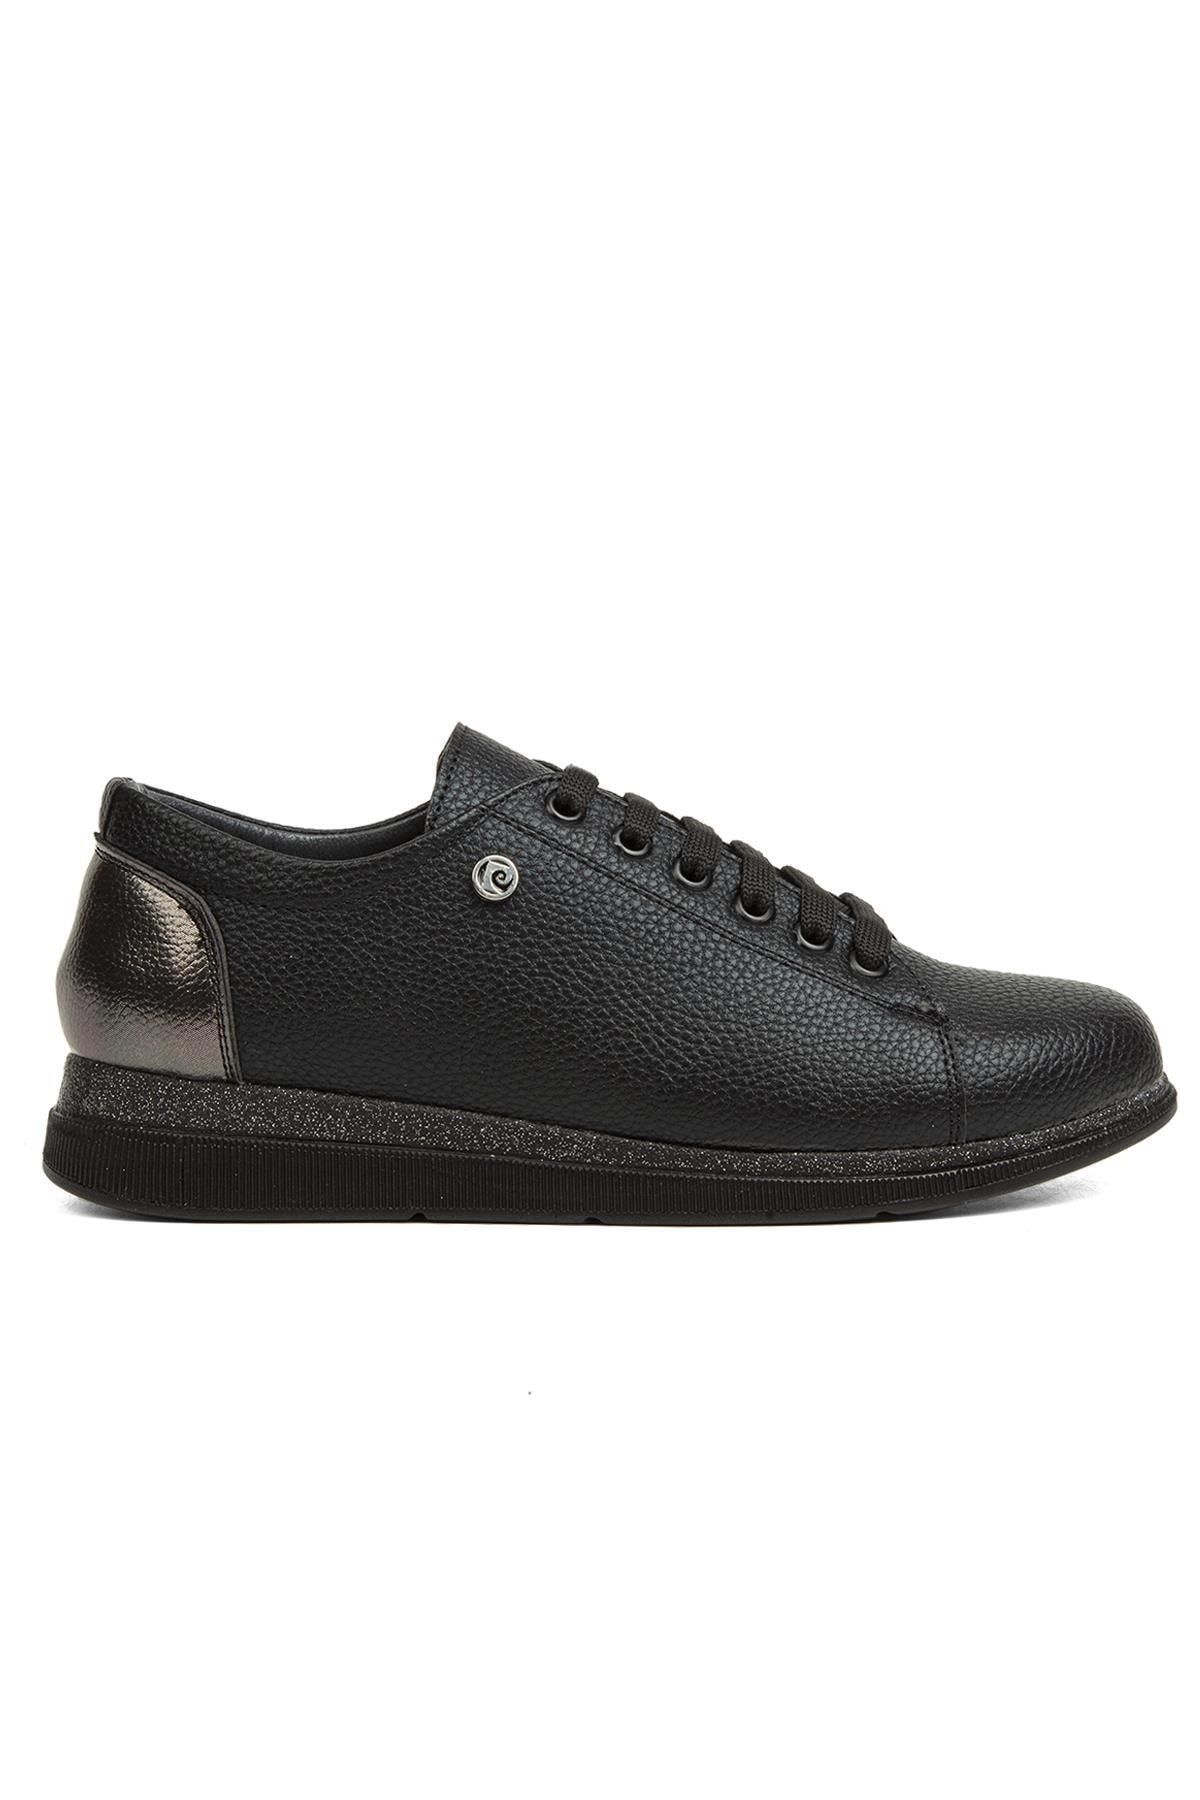 Pierre Cardin ® | Pc-51935-3441 Siyah - Kadın Günlük Ayakkabı